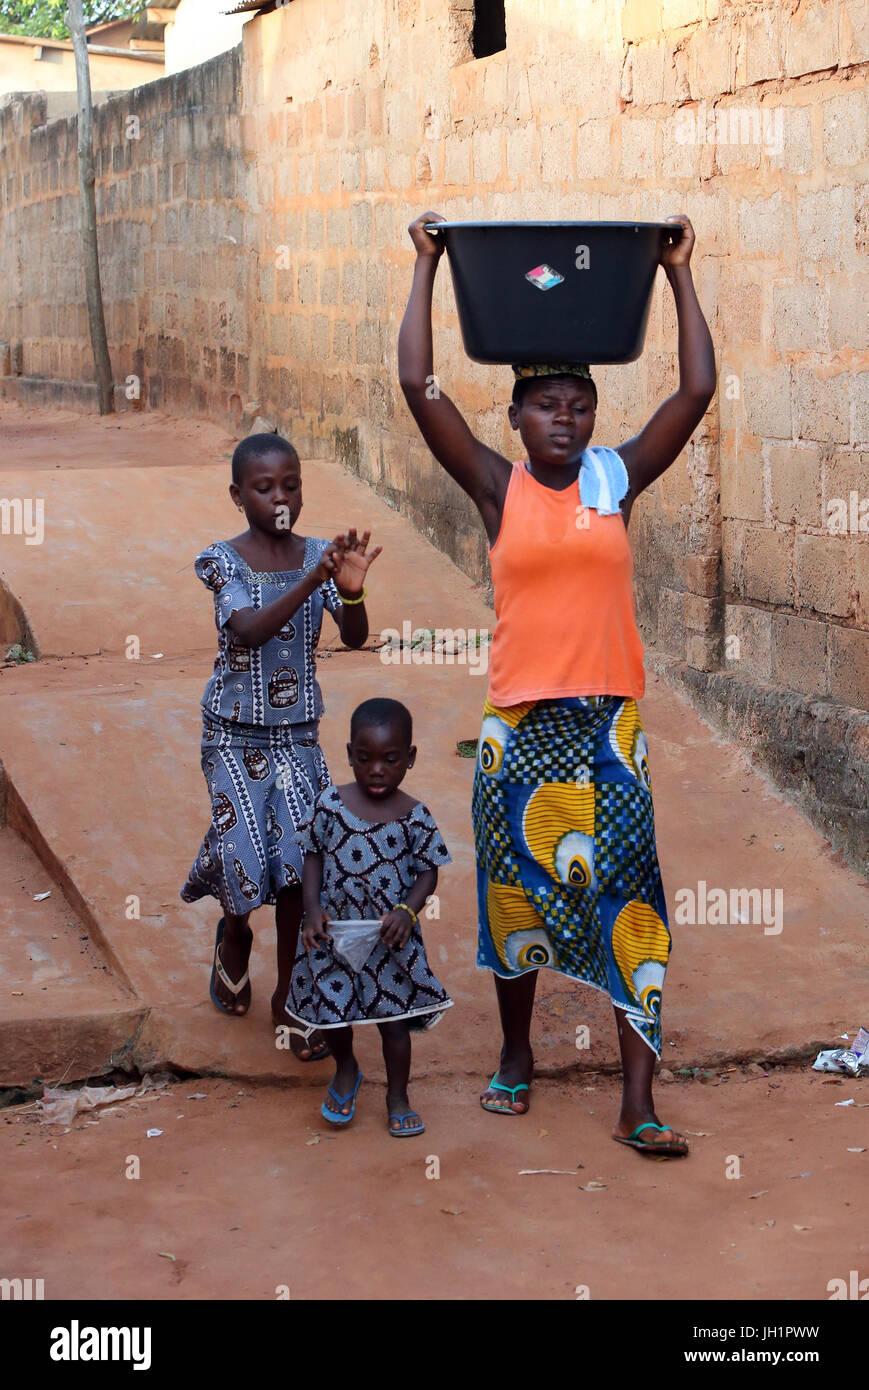 La vida del pueblo africano. Lata de agua. Muchacha africana llevando una cuenca de agua en la cabeza. Togoville. Togo. Foto de stock